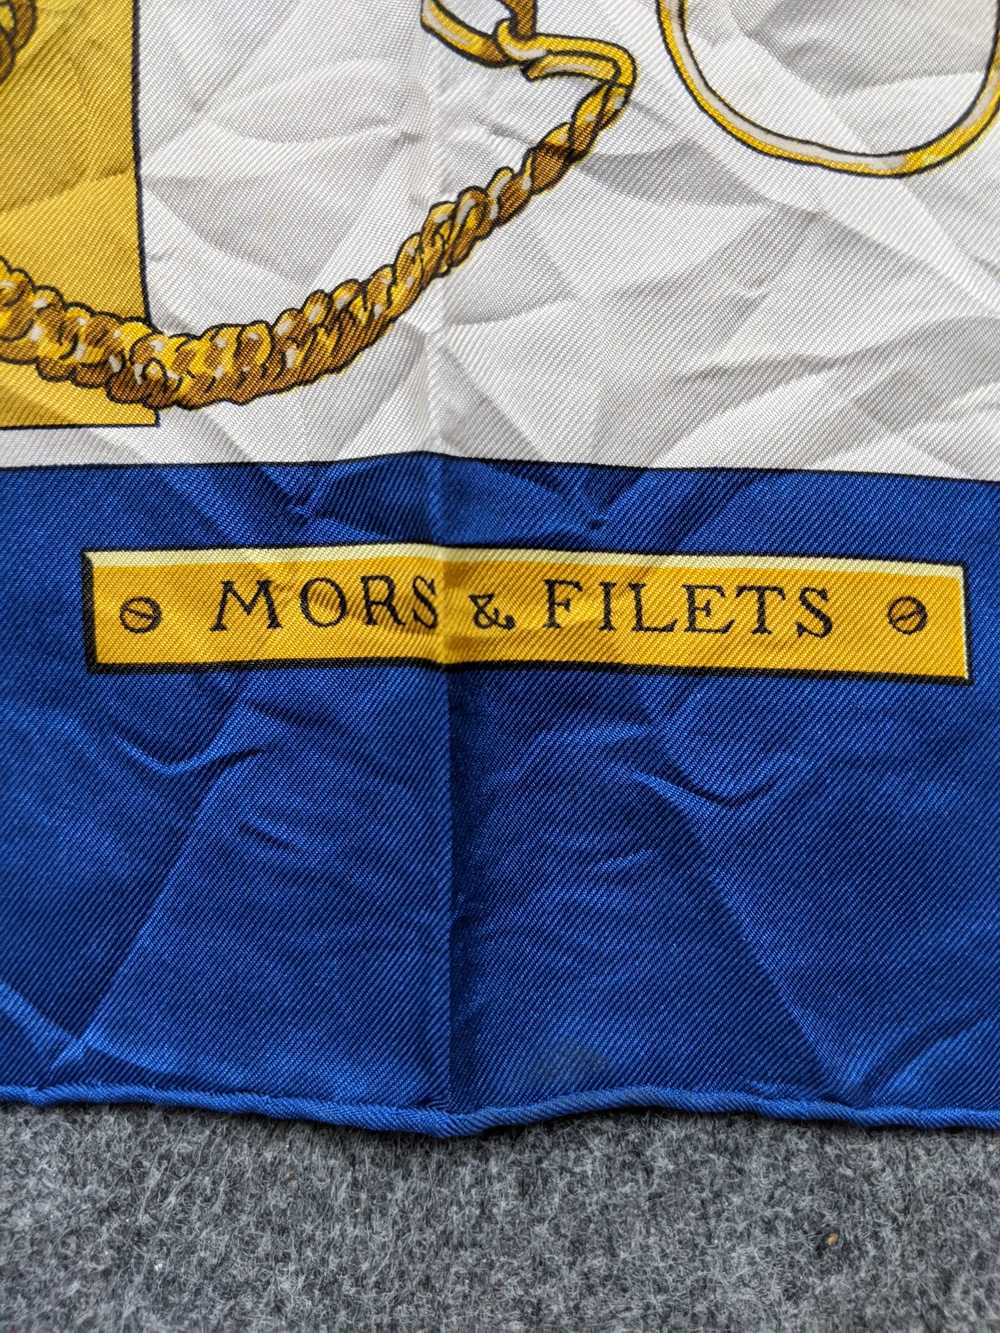 Vintage Hermes Mors & Fillets Silk Scarf - image 3